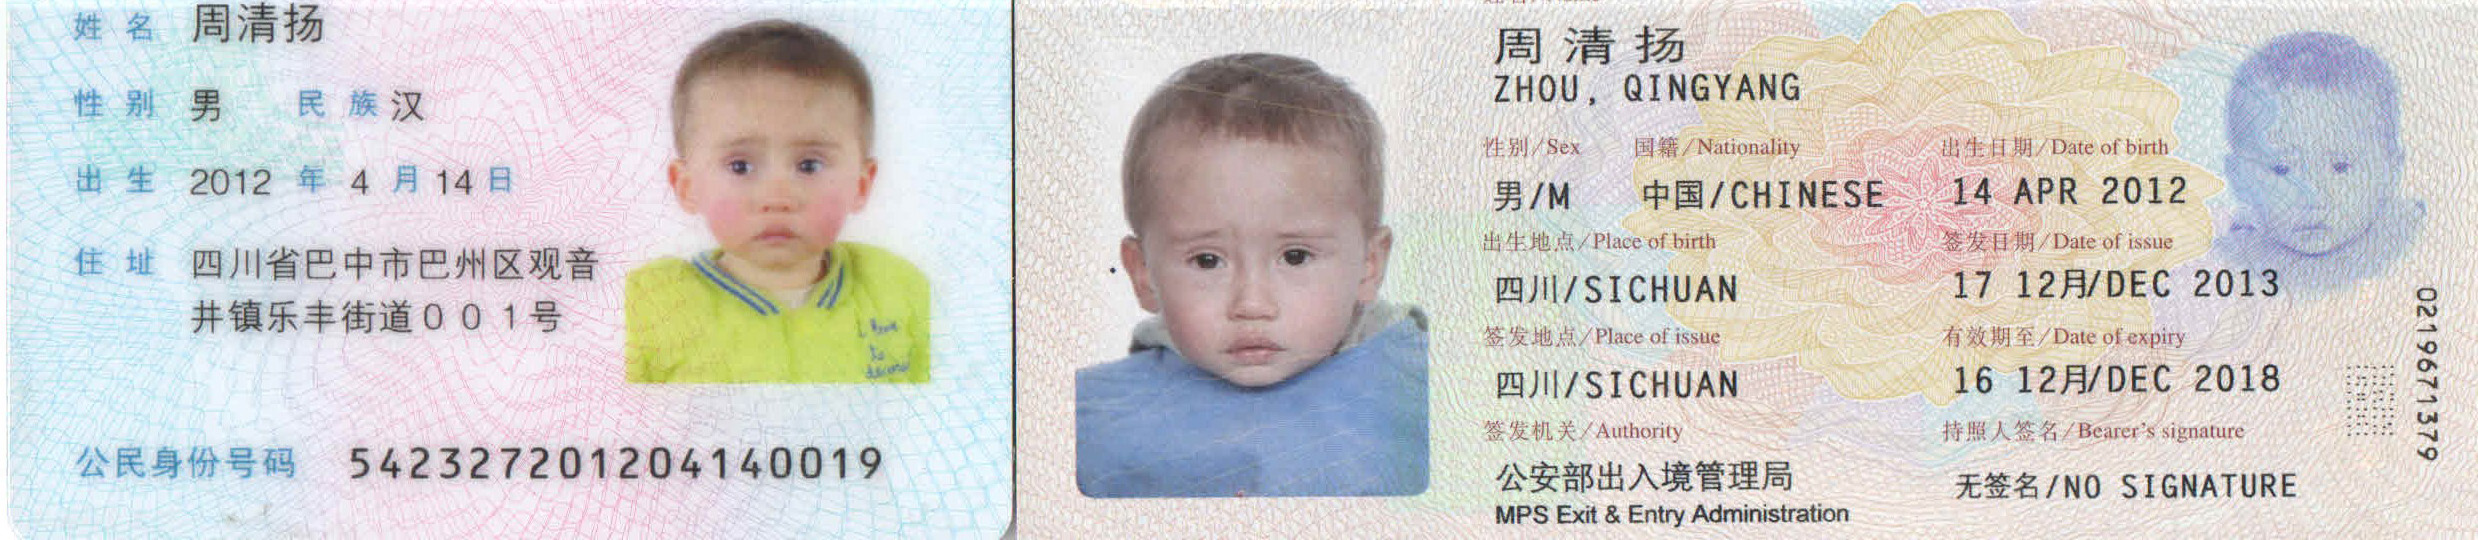 leo passport header